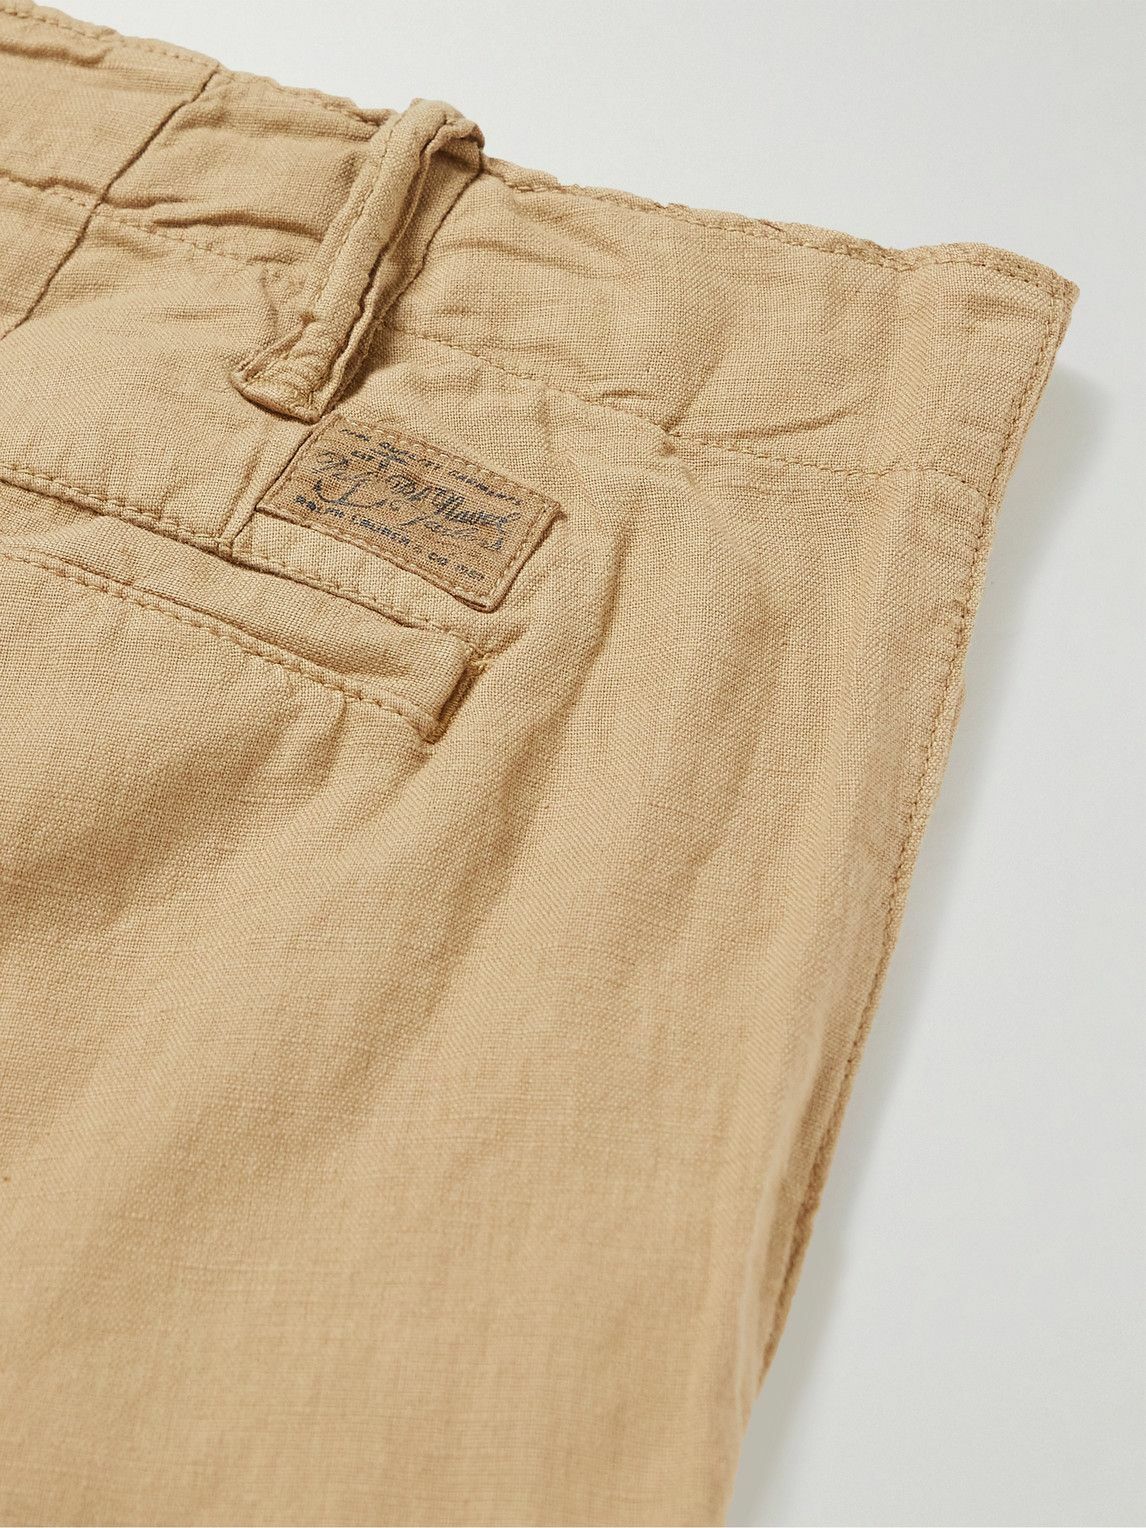 Polo Ralph Lauren - Straight-Leg Linen and Cotton-Blend Shorts - Neutrals Polo  Ralph Lauren